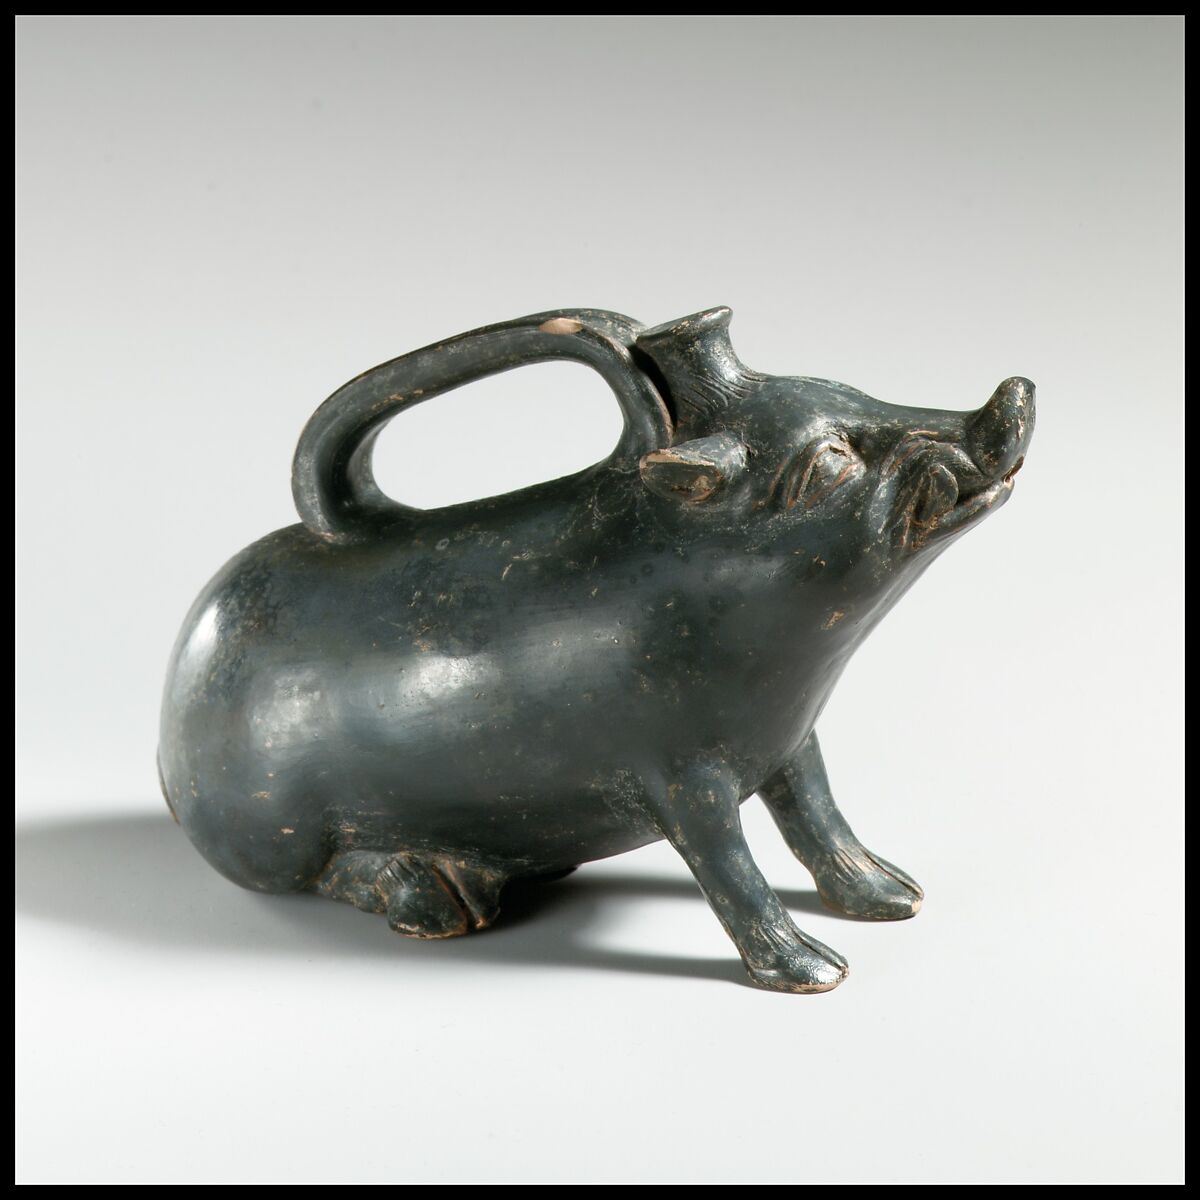 Terracotta askos in the form of a boar, Terracotta, Greek, South Italian, Campanian 